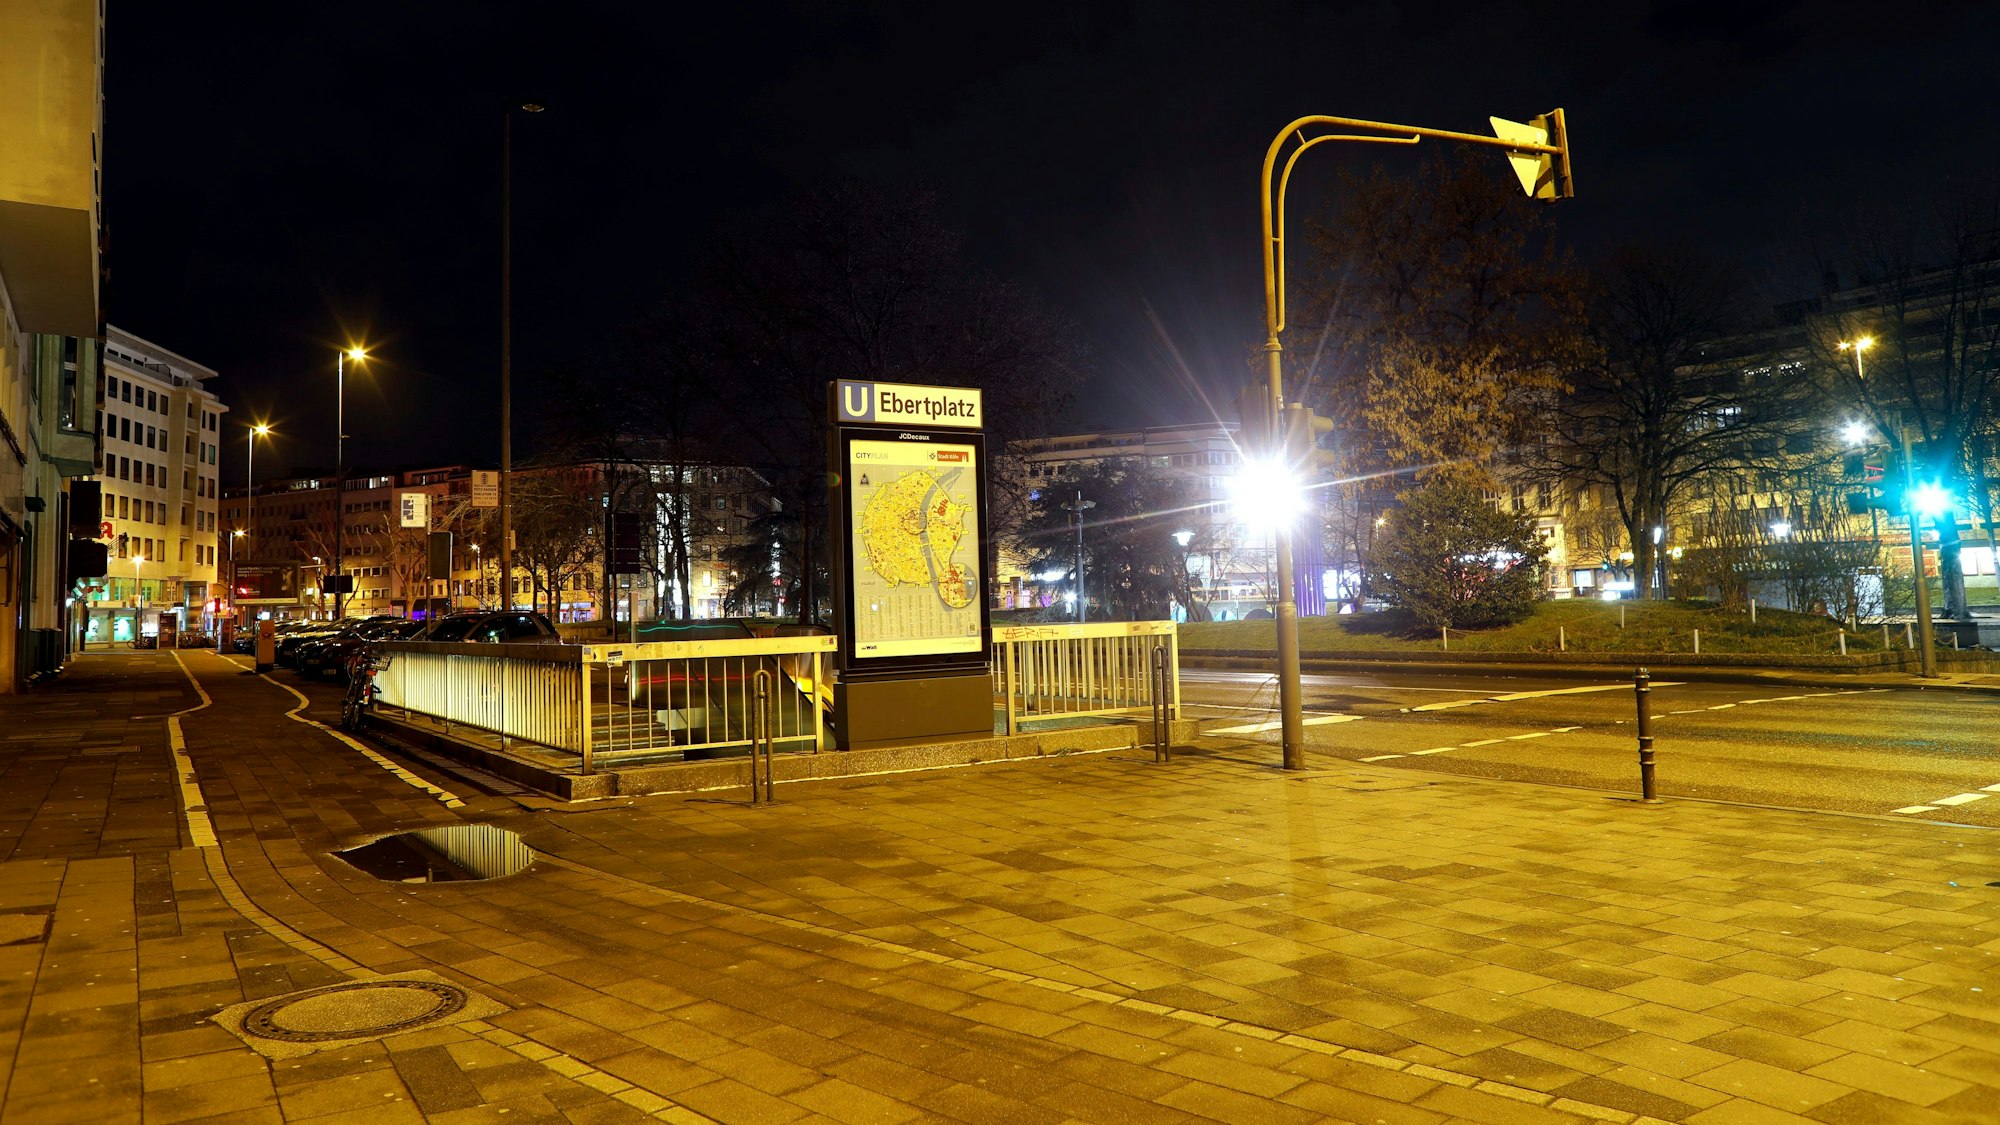 U-Bahn-Schild am Ebertplatz in Köln in der Nacht.